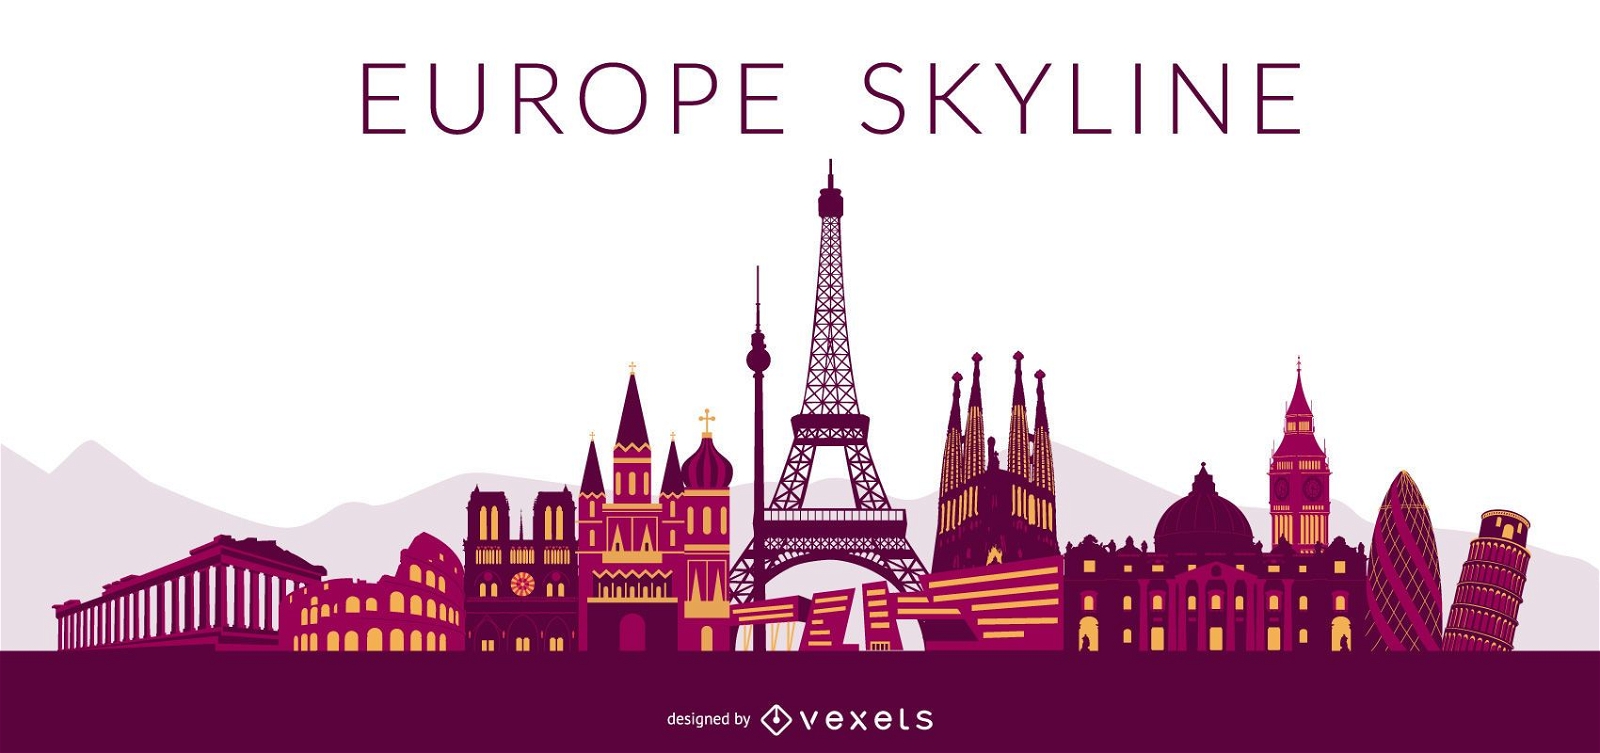 Europa farbiges Skyline-Design